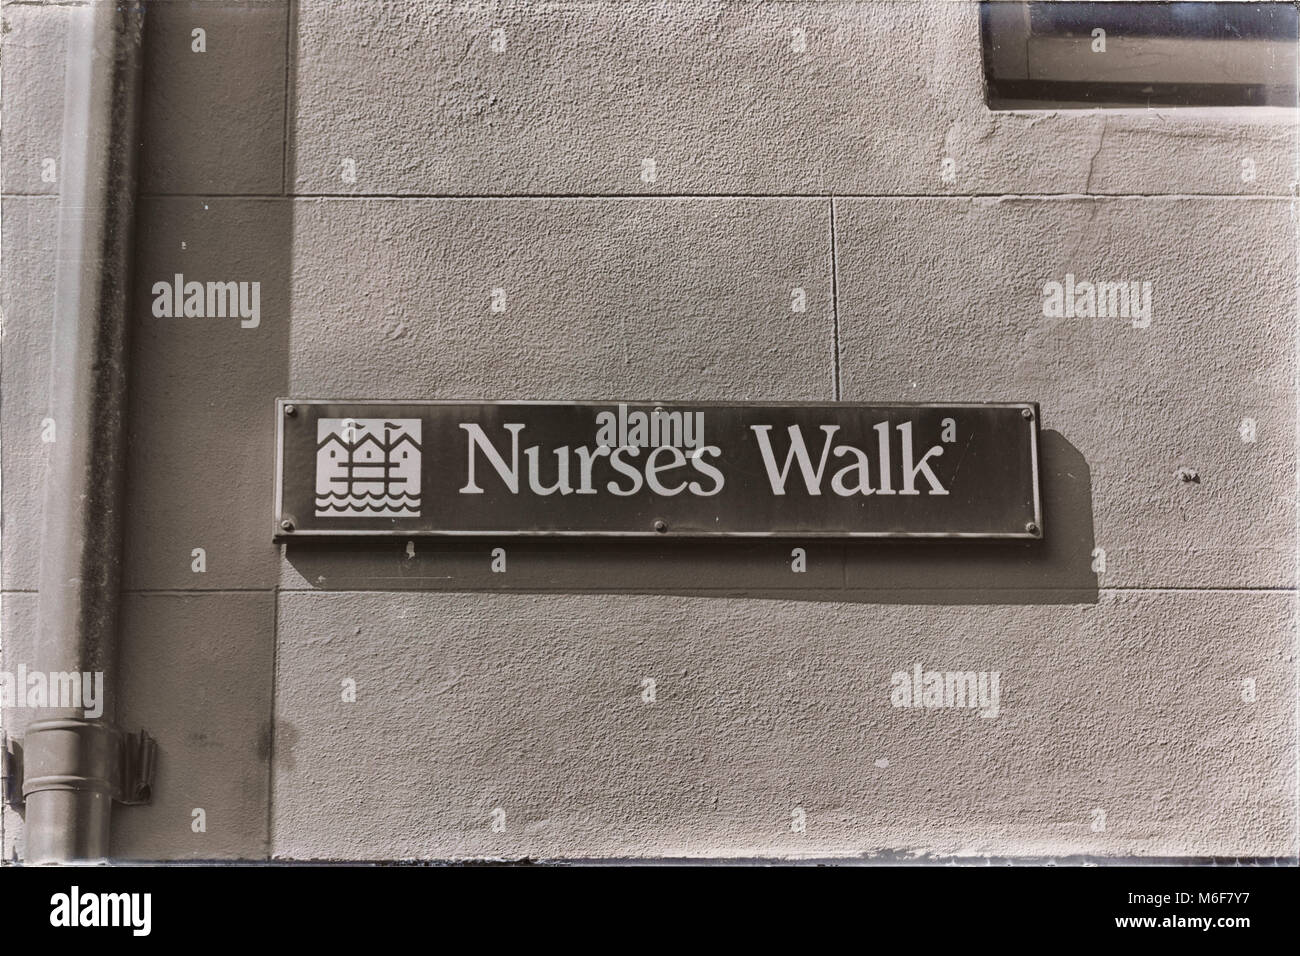 Sidney en Australie le signe de nursers street à pied dans le mur Banque D'Images